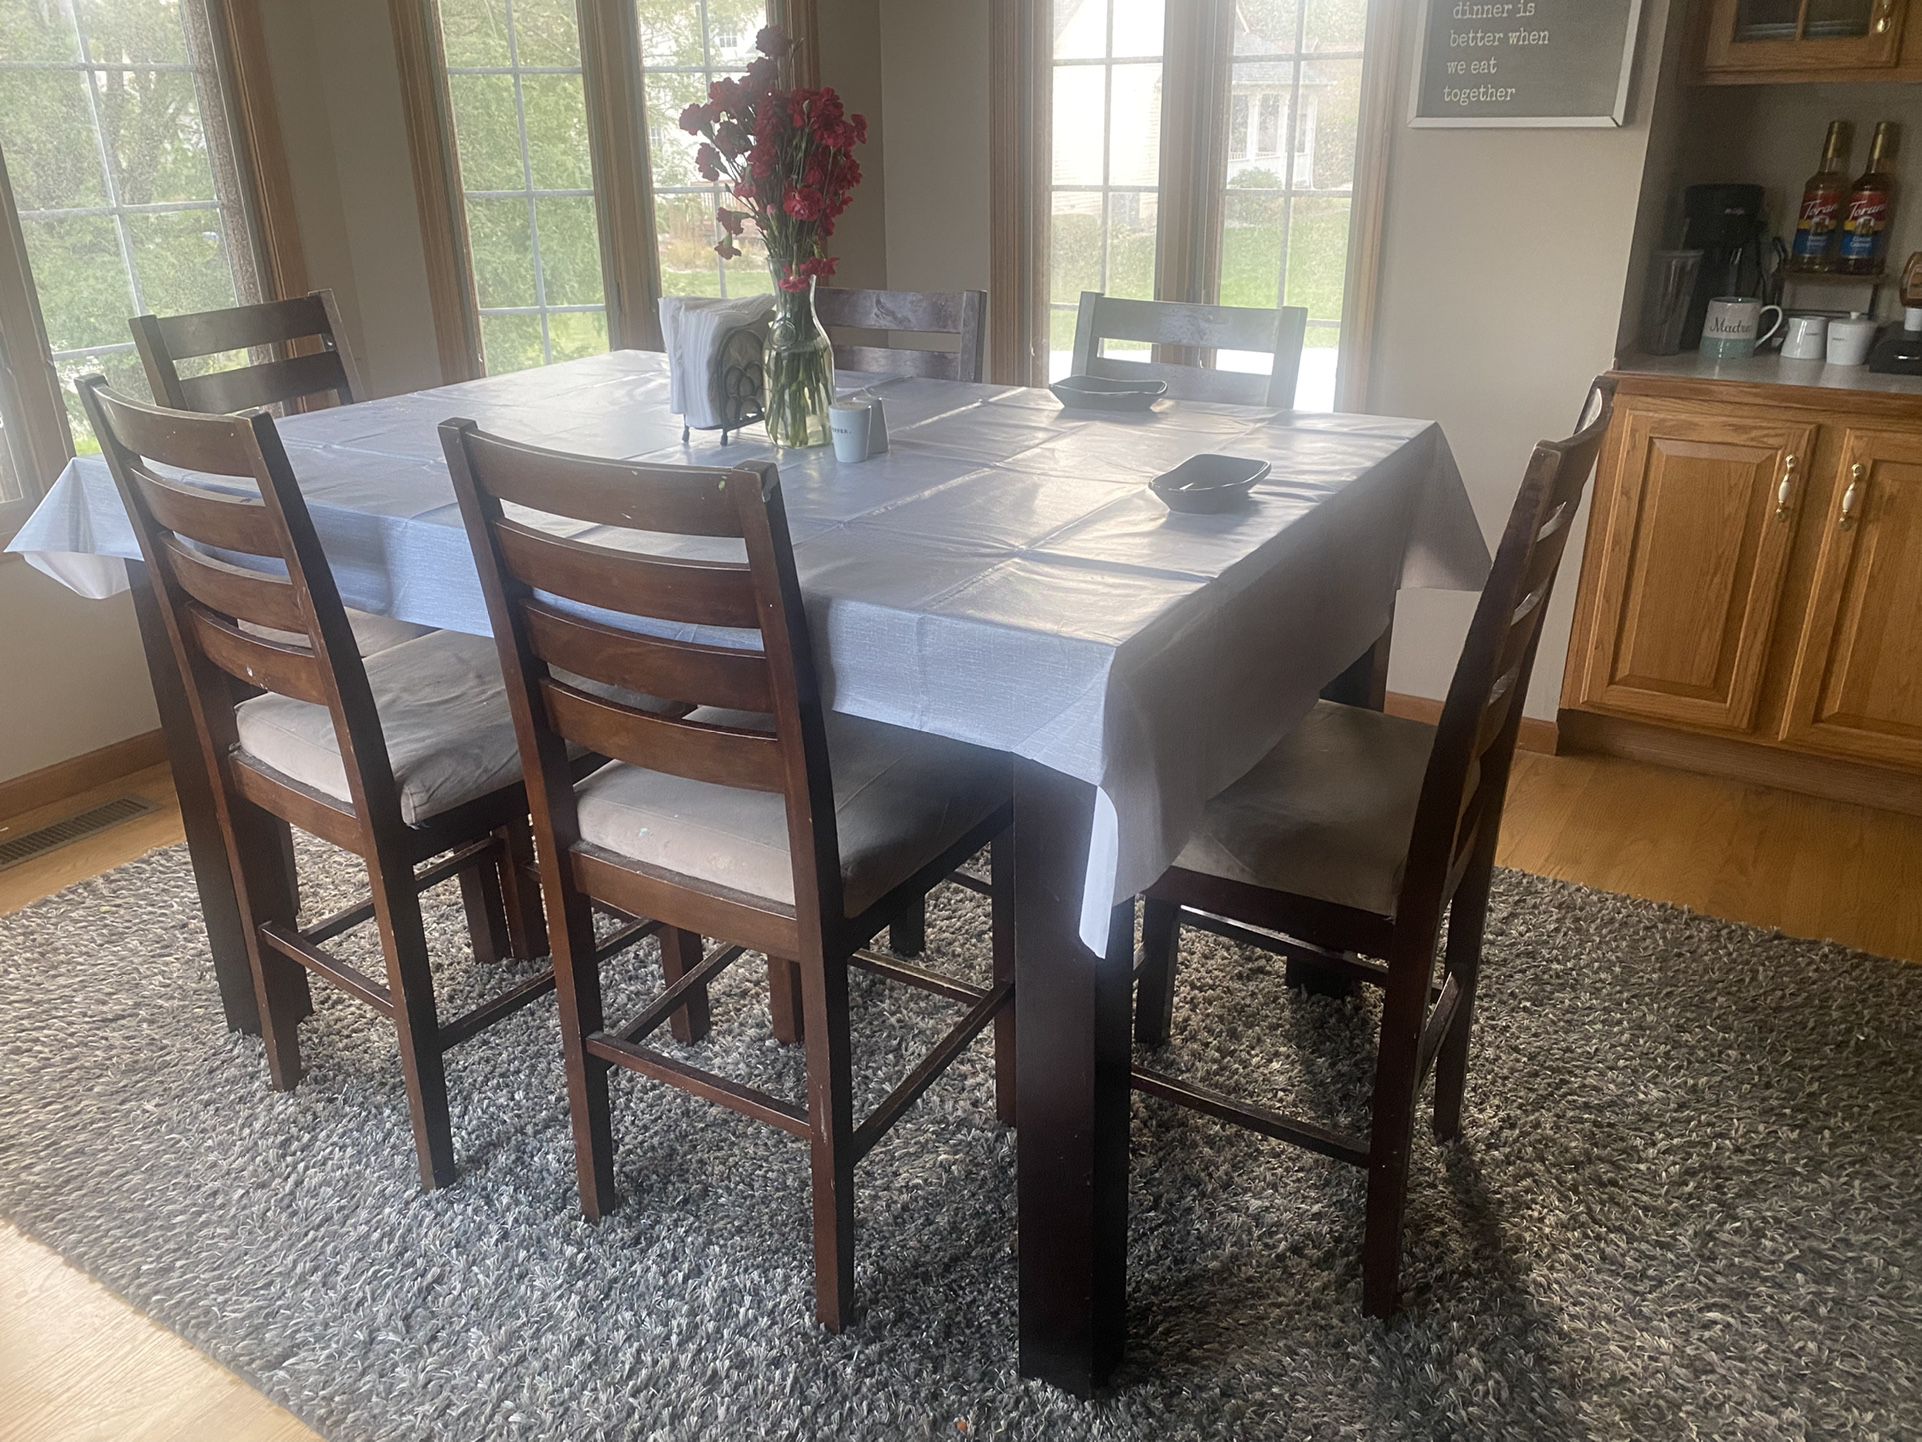 Family Dinner Table